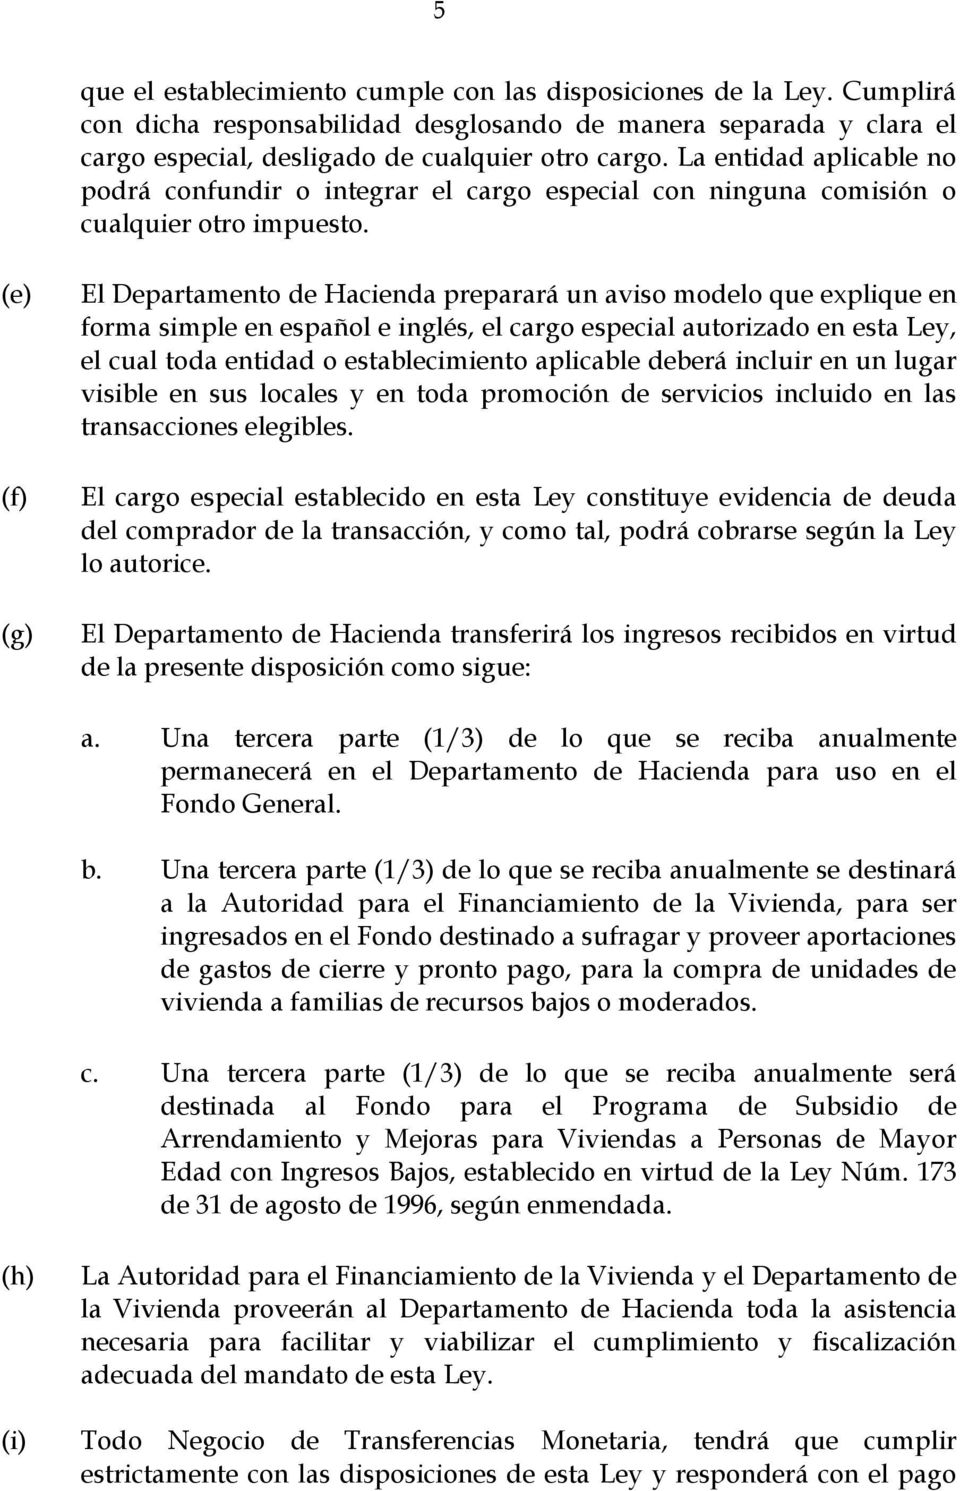 (e) (f) (g) El Departamento de Hacienda preparará un aviso modelo que explique en forma simple en español e inglés, el cargo especial autorizado en esta Ley, el cual toda entidad o establecimiento